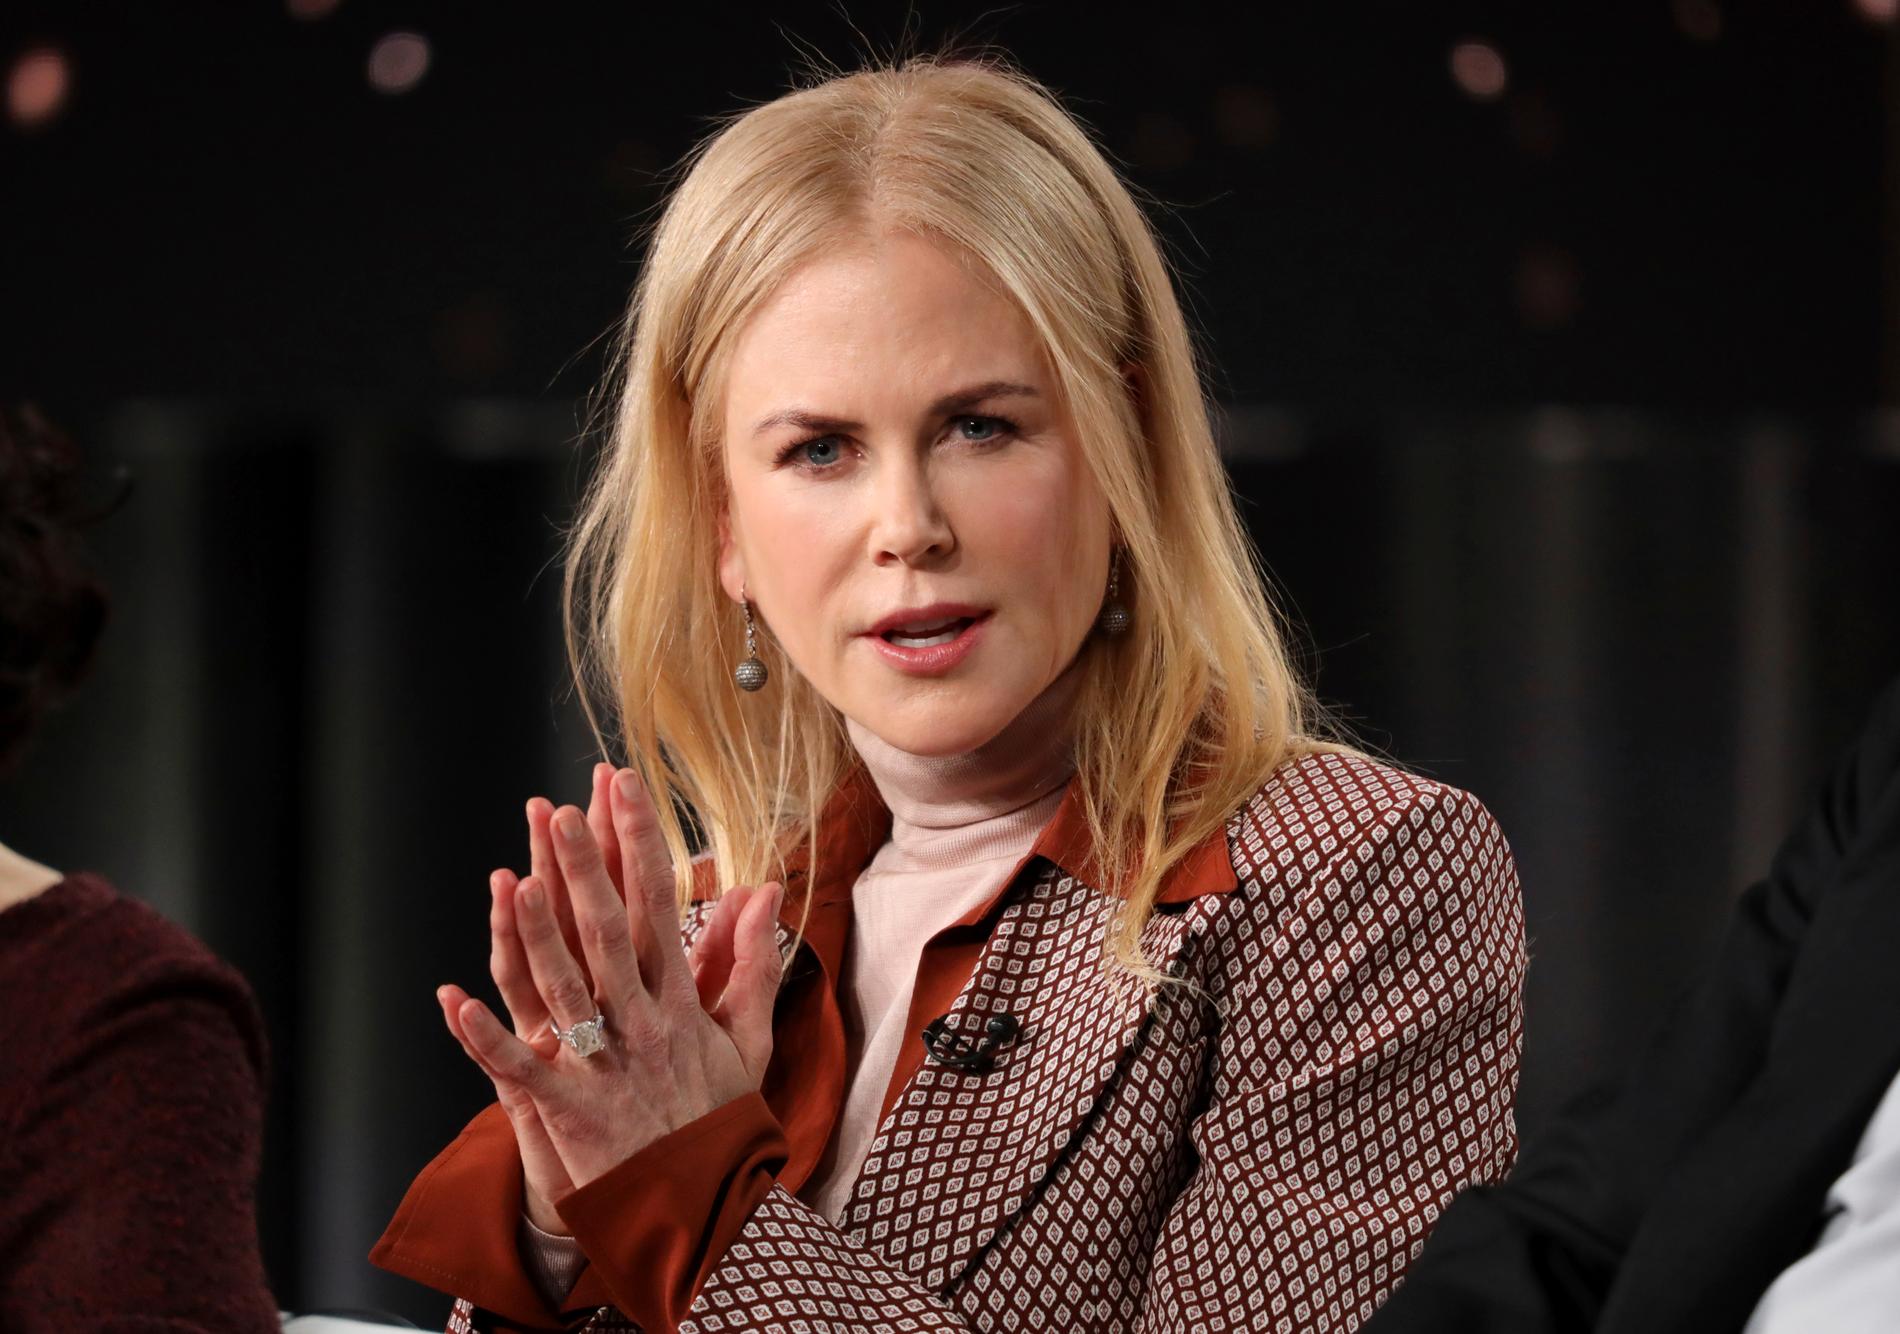 Nicole Kidman är aktuell i rollen som Grace i Susanne Biers nya miniserie "The undoing". Chansen att få jobba med den danska regissören hade filmstjärnan väntat på länge. Arkivbild.